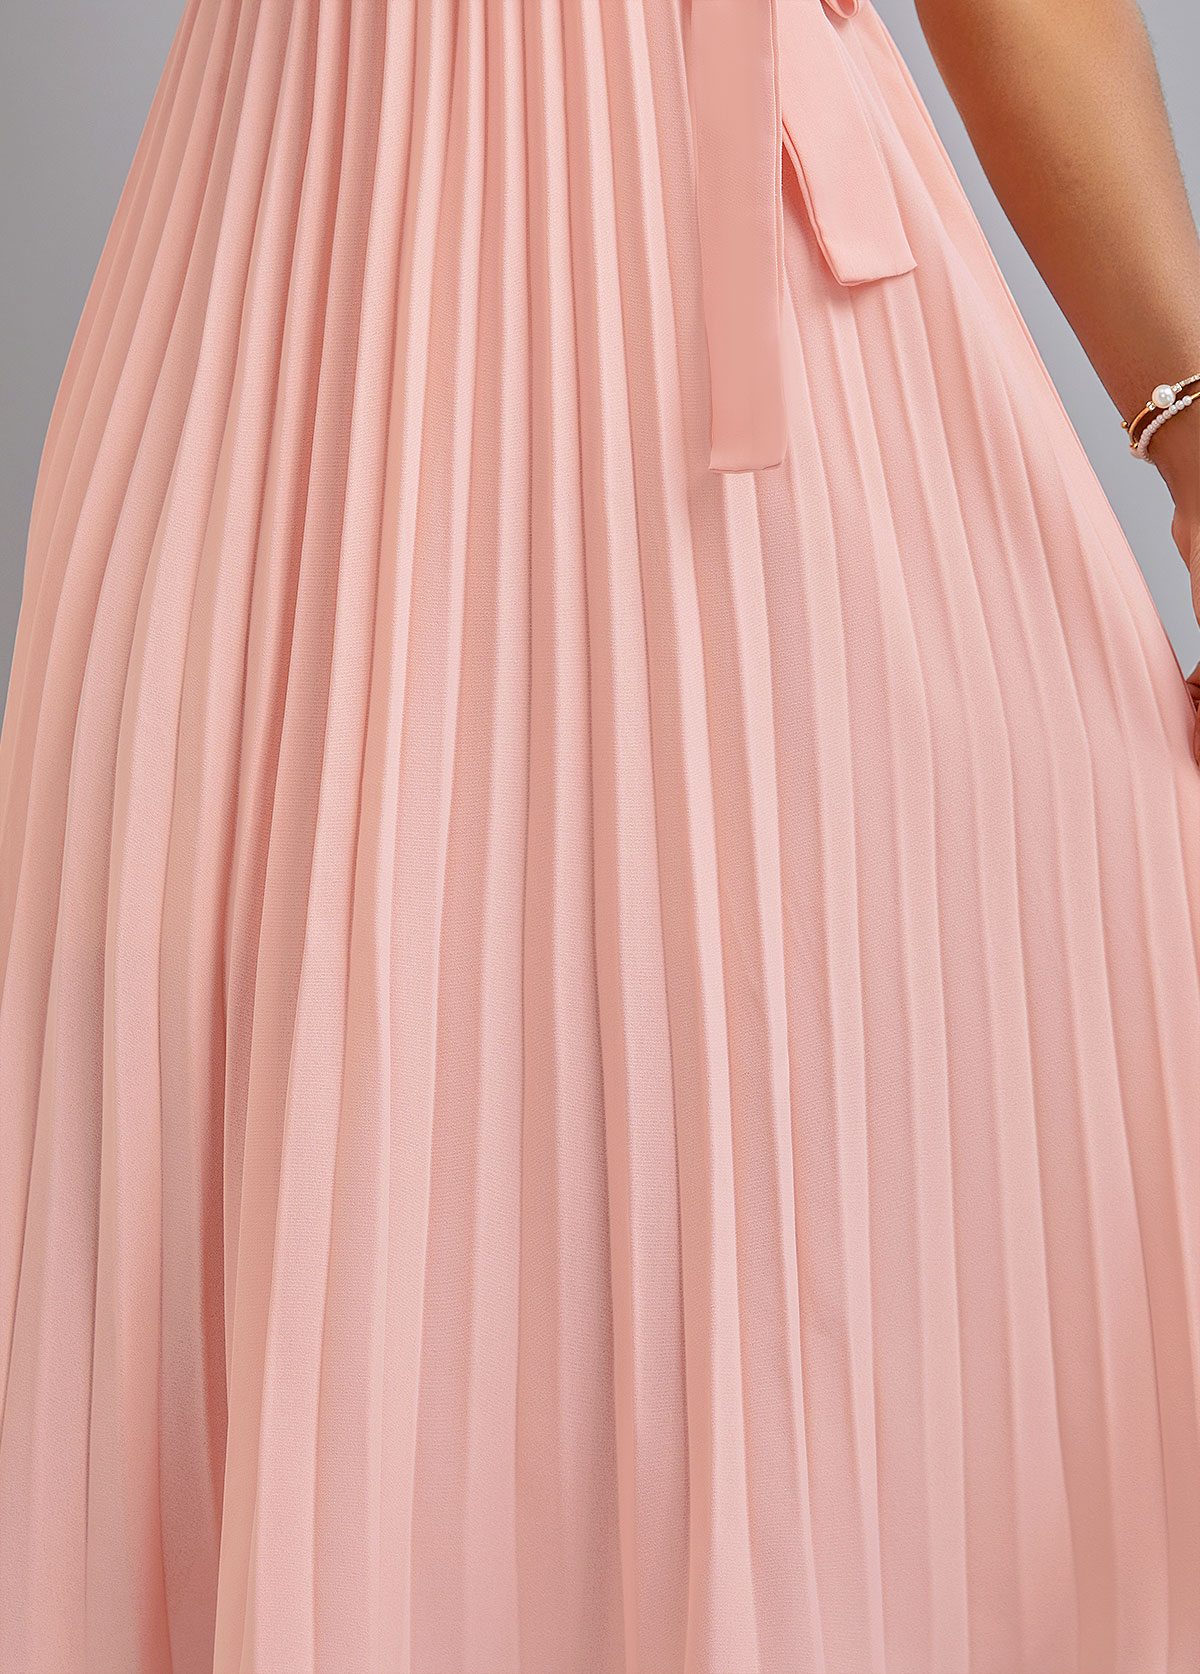 Pleated Belted Light Pink V Neck Dress